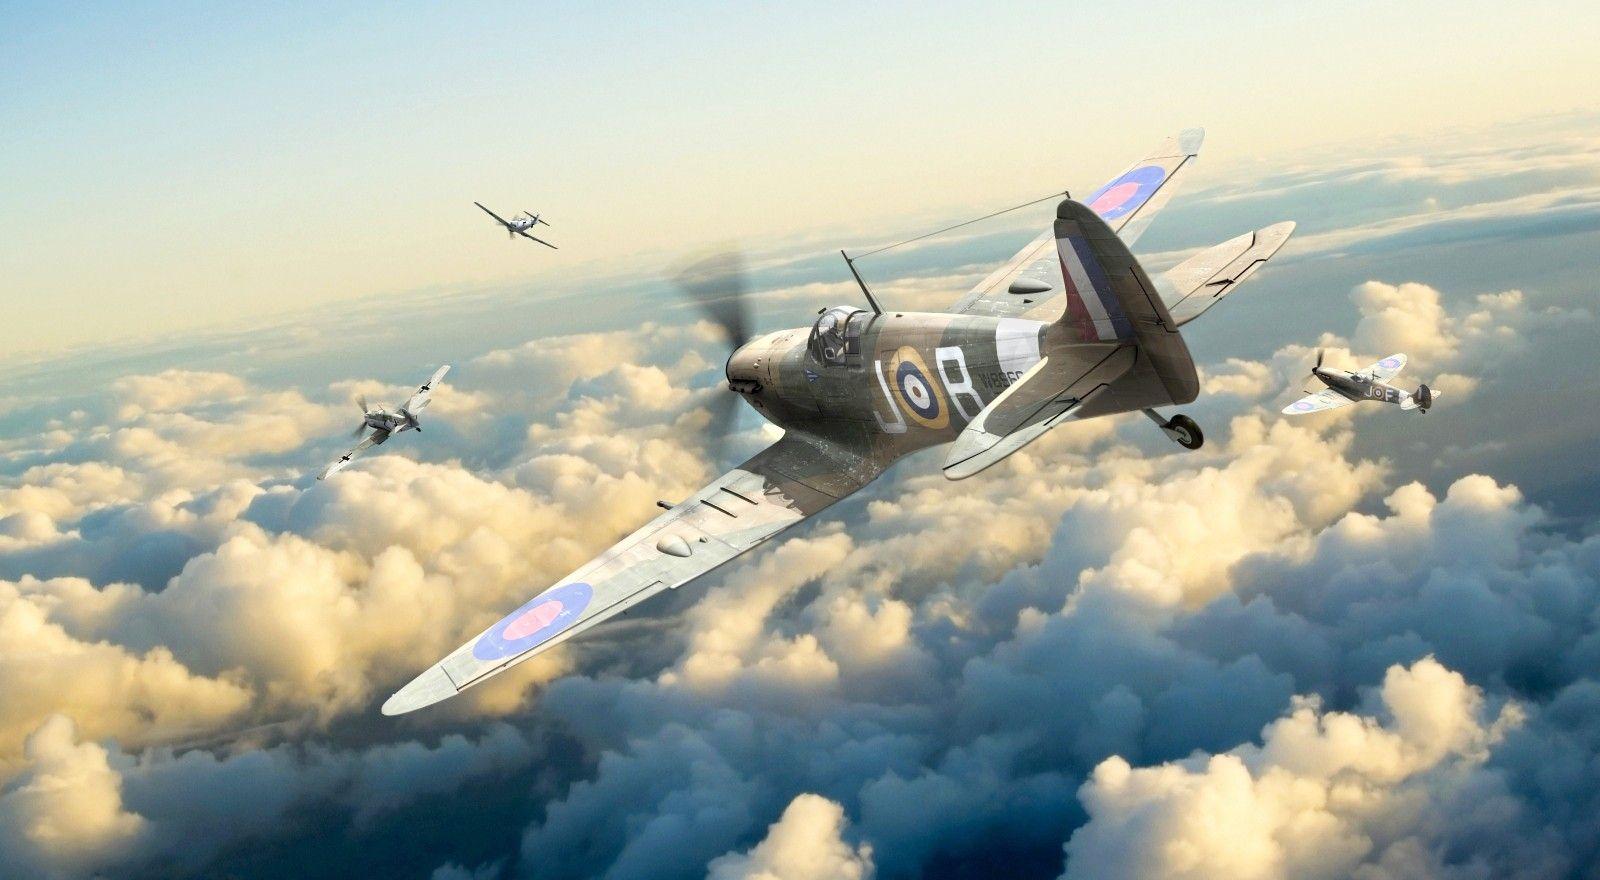 Battle of Britain, #Supermarine Spitfire, #Messerschmitt Bf 109